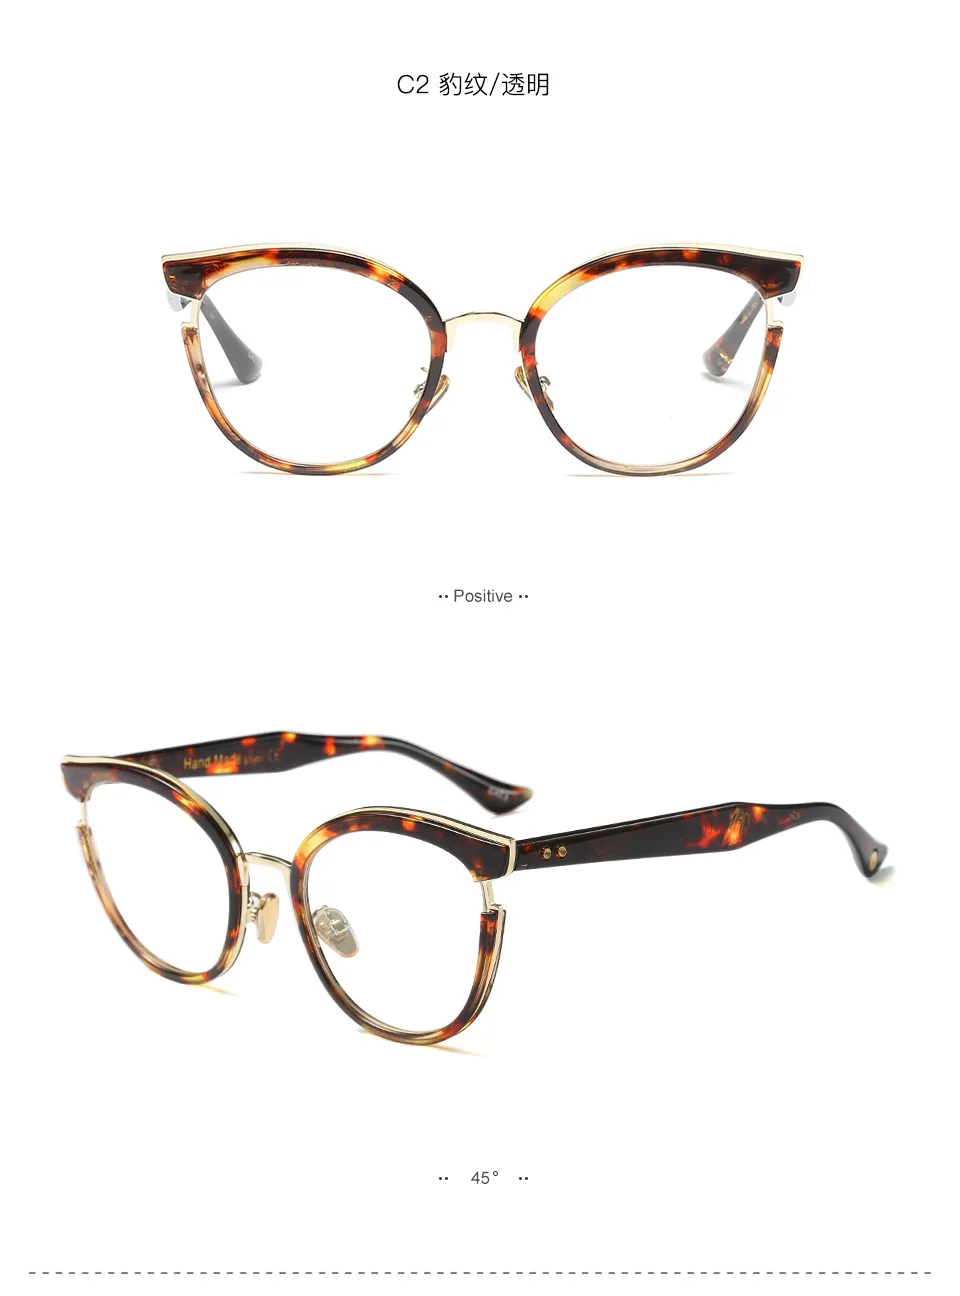 Очки для близорукости, фотохромные очки для мужчин и женщин, очки для близорукости, оправа с цветными линзами, солнцезащитные очки для близорукости, очки FML